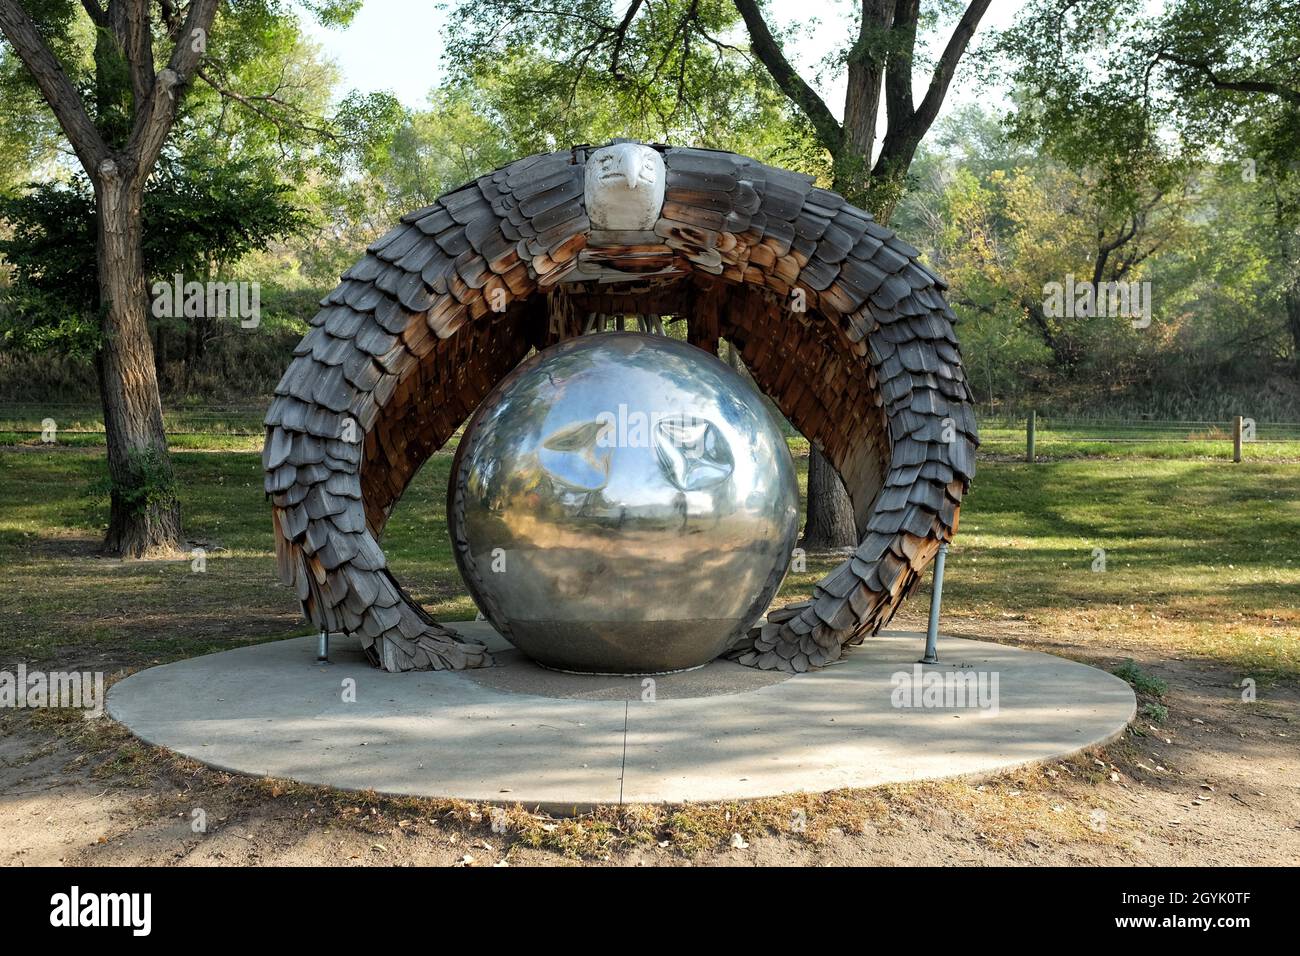 BISMARCK, NORTH DAKOTA - 3 Okt 2021: Reflections Sculpture in Steamboat Park. Ein Geist Adler Flügel verschlingen die Erde, um Gleichgewicht zwischen allen Liv zu schaffen Stockfoto